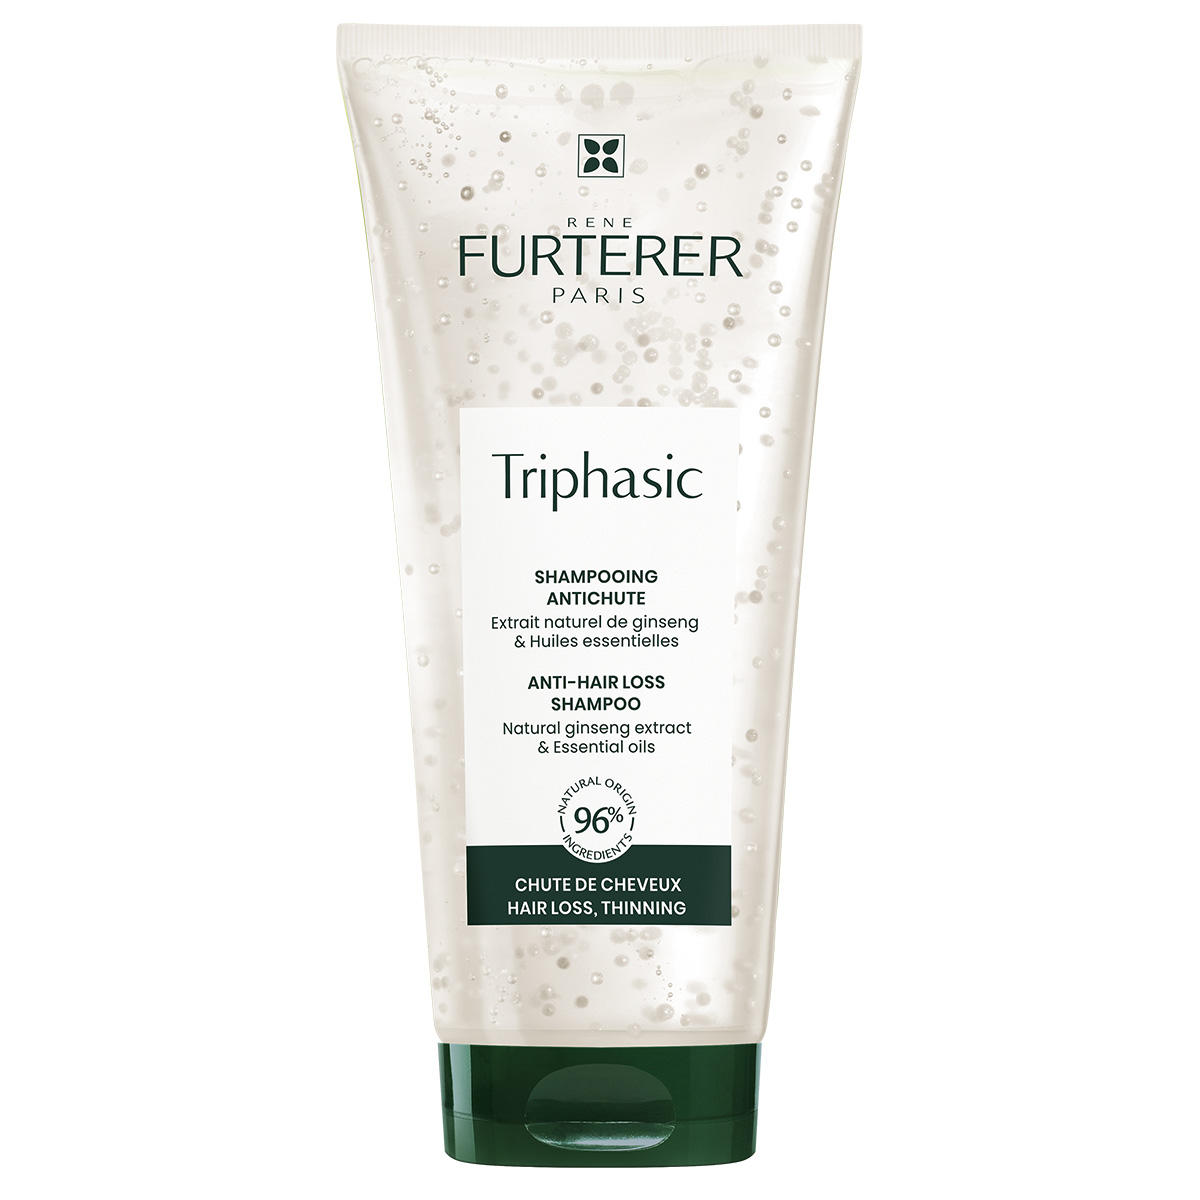 René Furterer Triphasic Shampoo for hair loss  - 1